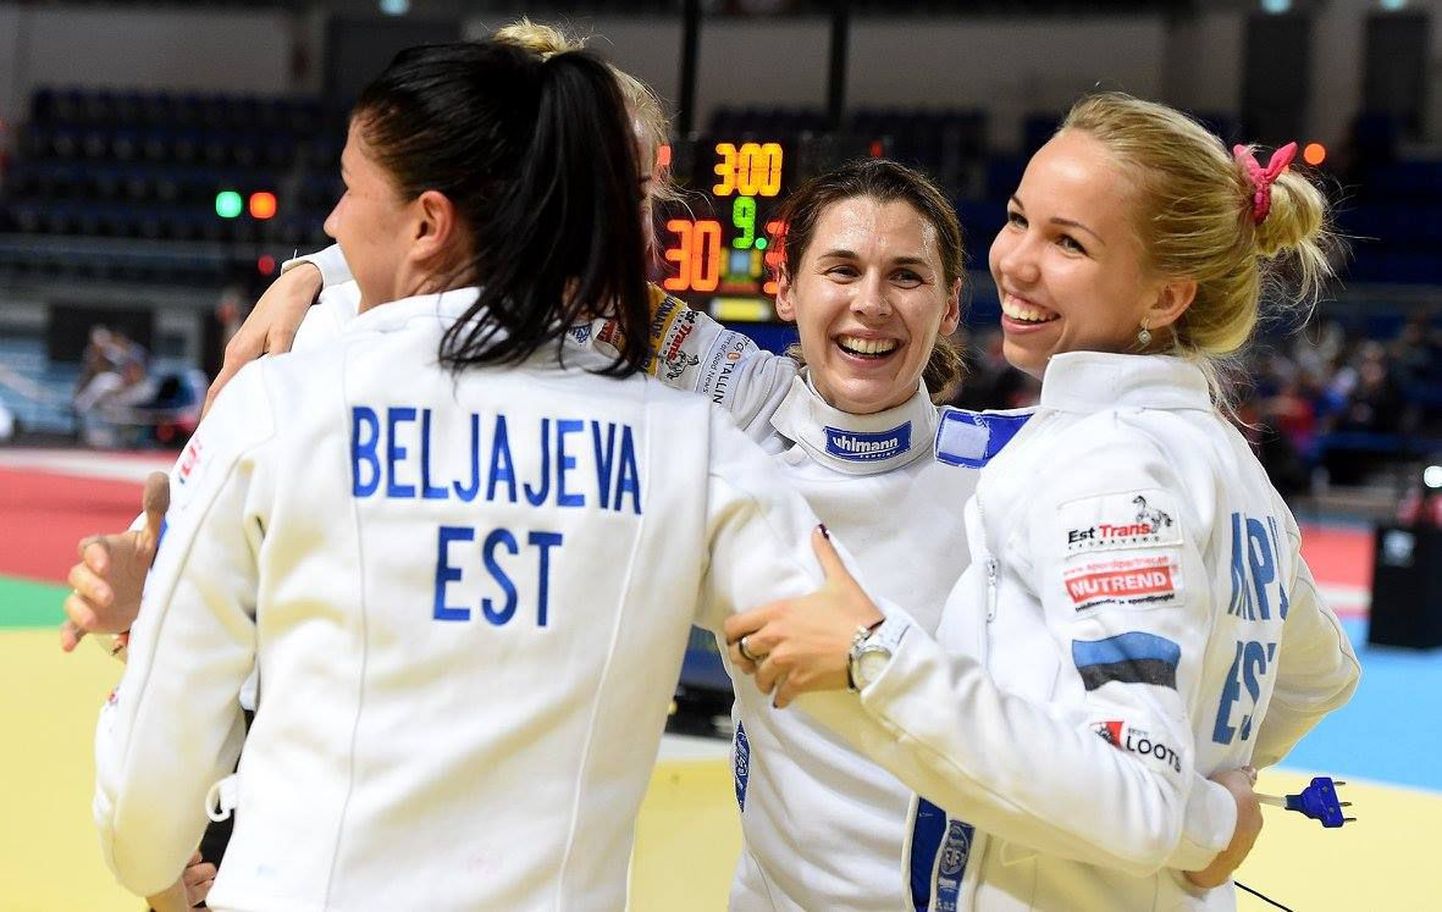 Eesti epeenaiskond (Irina Embrich, Erika Kirpu, Julia Beljajeva, Kristina Kuusk) võitis Torunis toimunud Euroopa meistrivõistlustel kuldmedali.